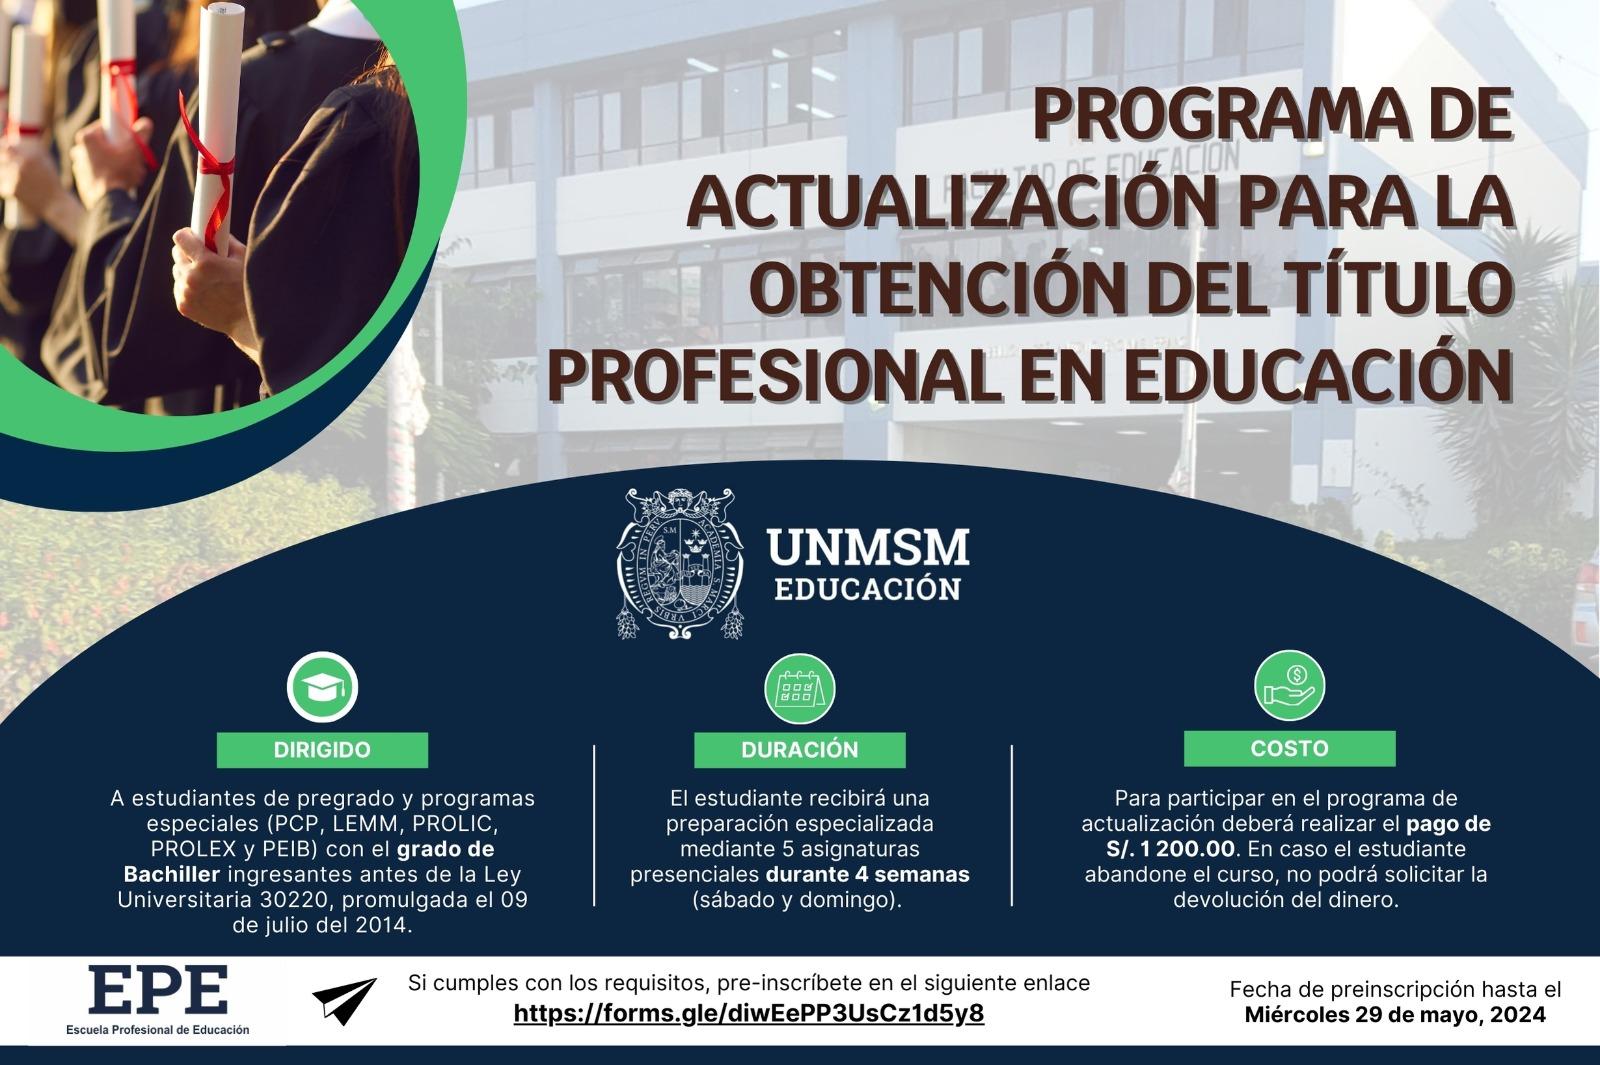 La Escuela Profesional de Educación de la UNMSM ha lanzado la convocatoria del Programa de Actualización para la Obtención del título profesional  en Educación.